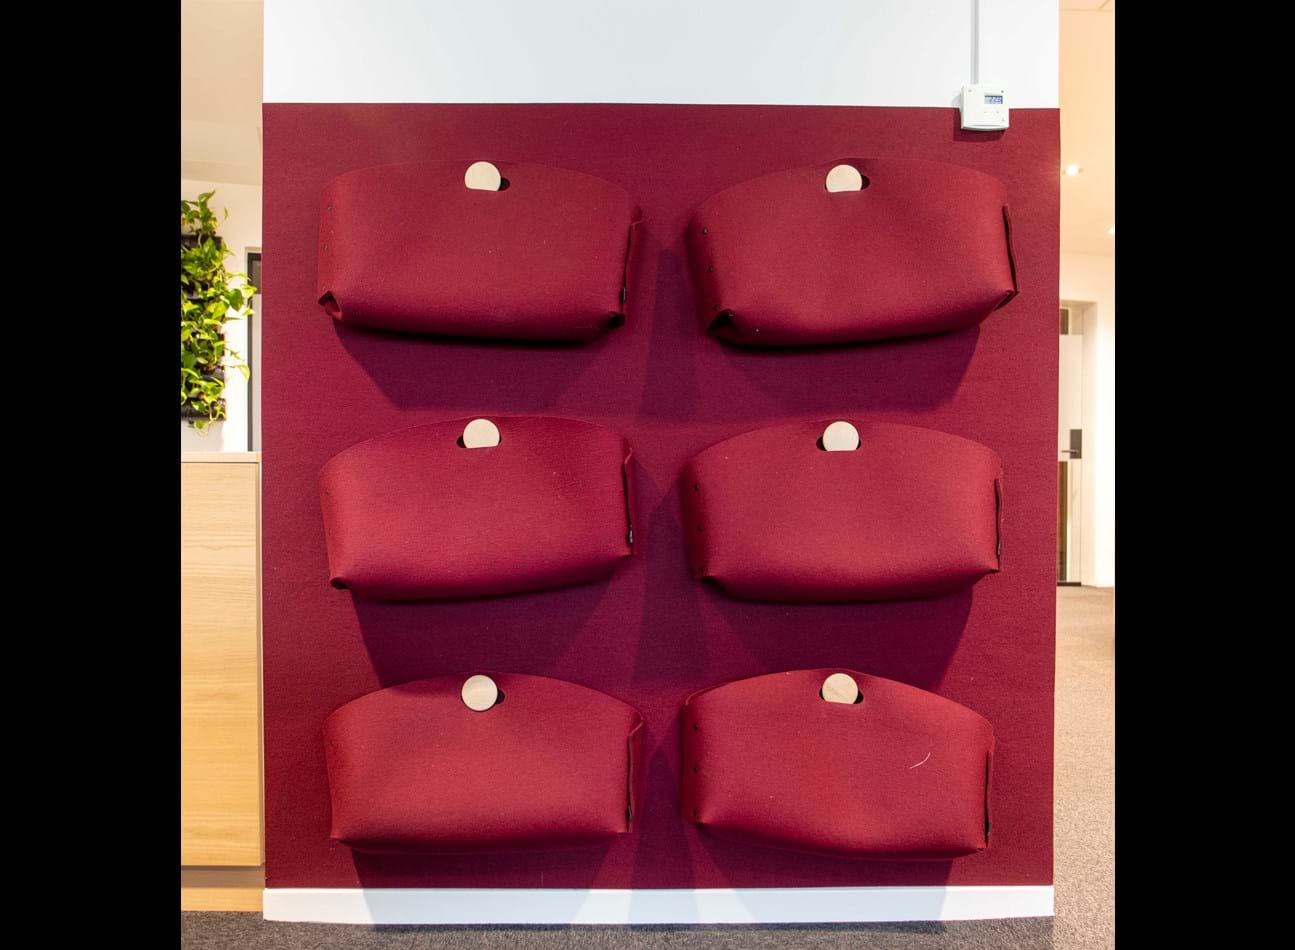 6 røde kontortasker i filt ophængt på væg